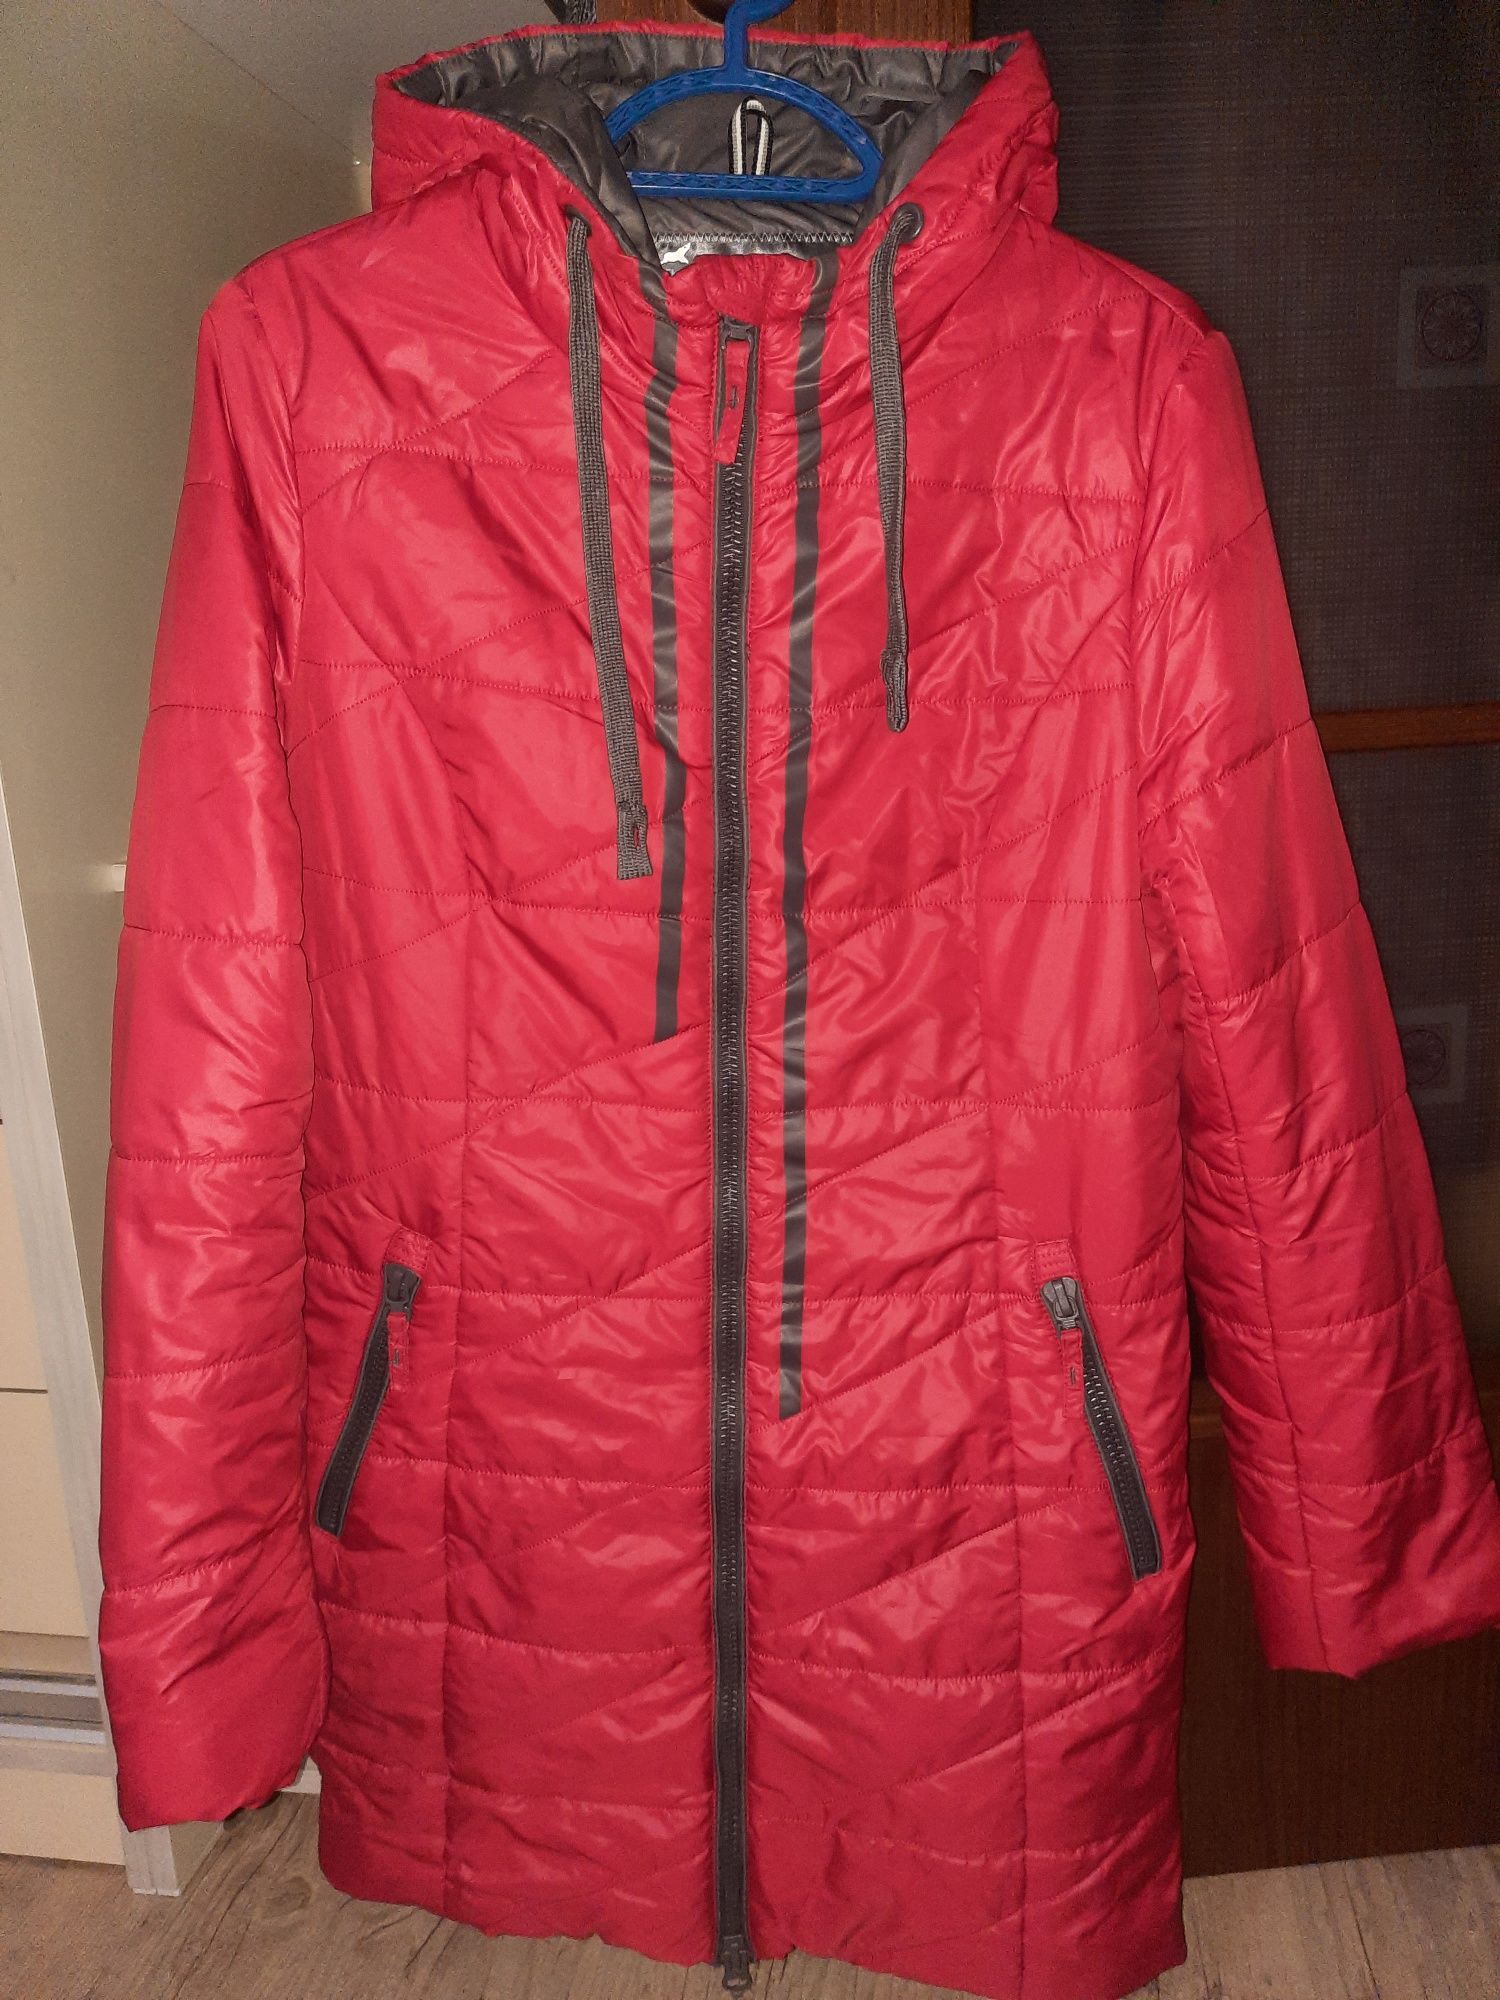 Женские куртки, сезон весна, размеры 46-48, цена от 2000.